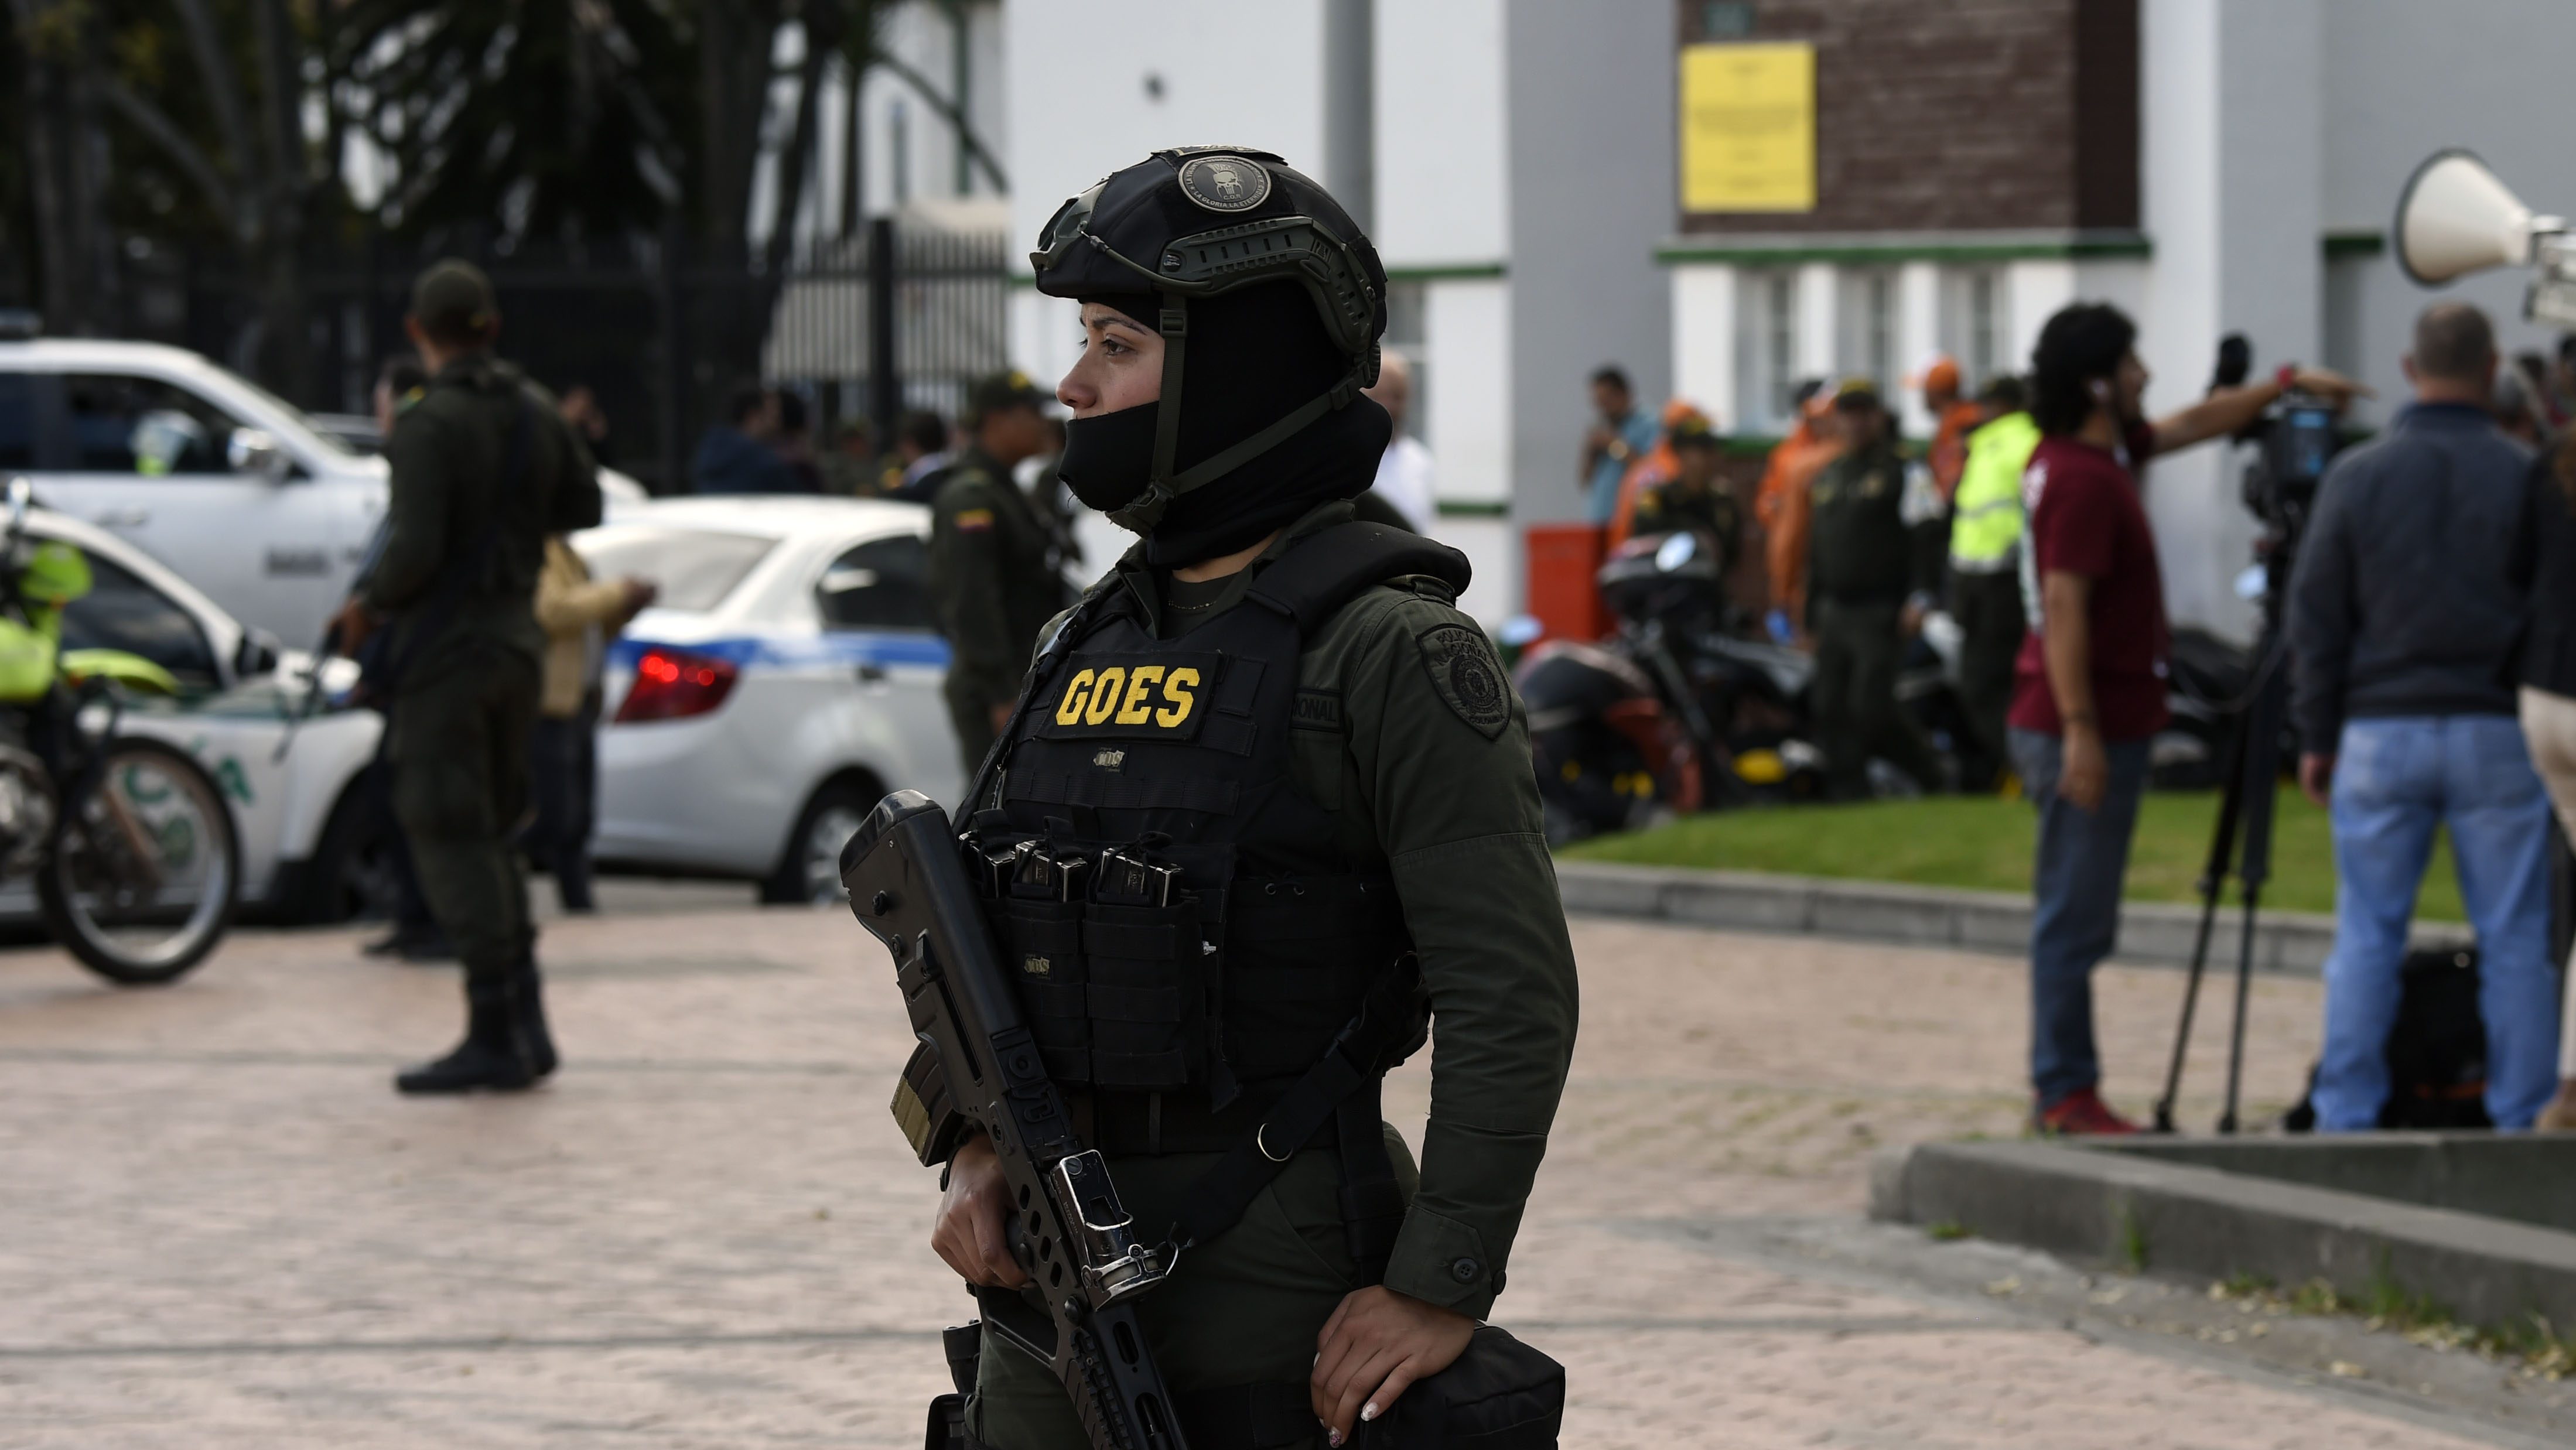 Las fuerzas de seguridad montan guardia frente a la escuela de entrenamiento de cadetes de la policía en Bogotá, donde un aparente ataque con coche bomba dejó varios muertos y heridos el 17 de enero de 2019. Crédito: JUAN BARRETO / AFP / Getty Images